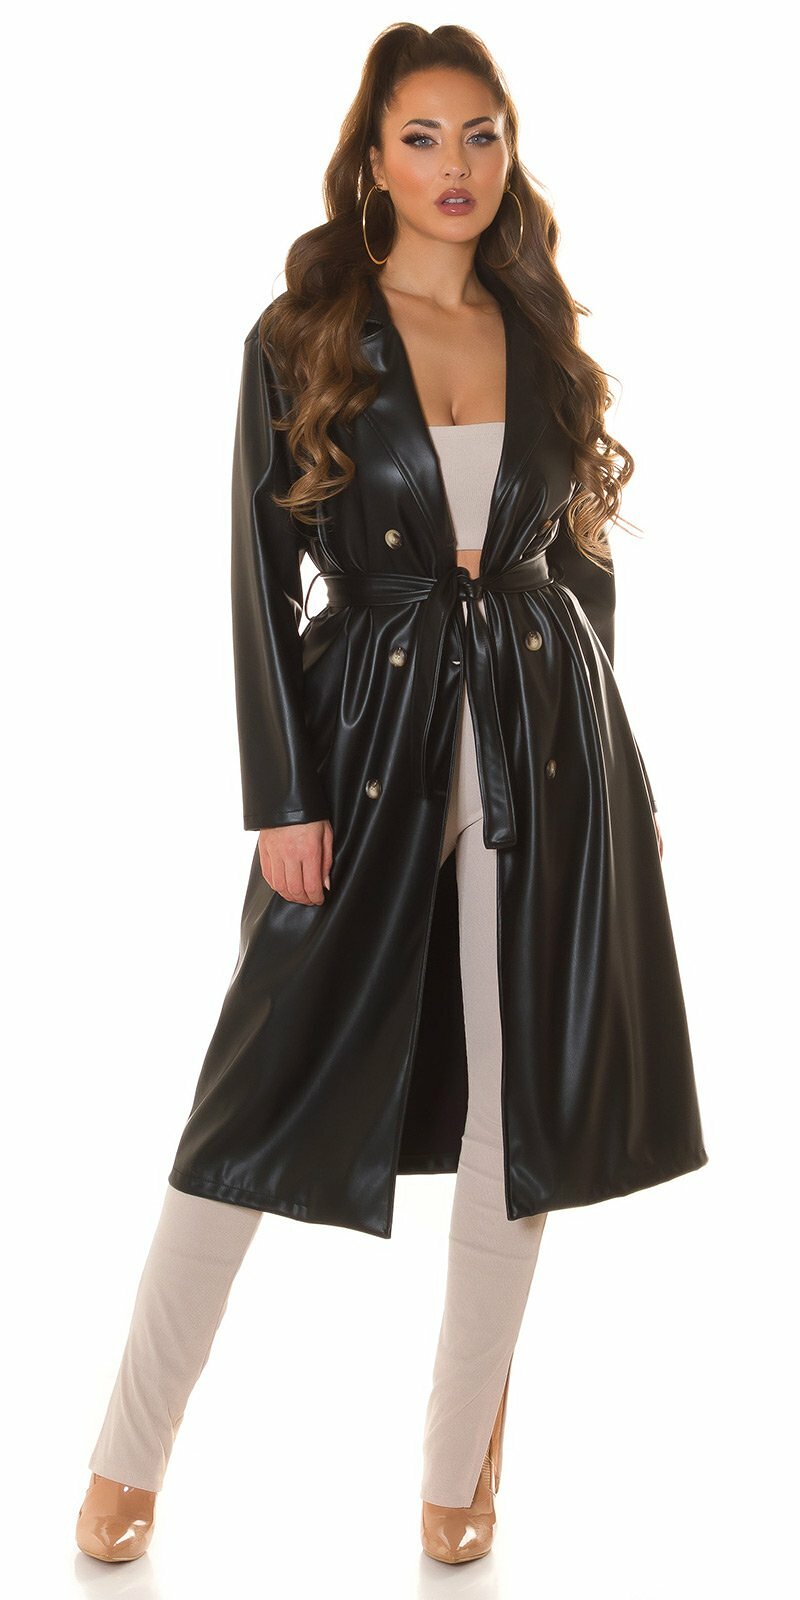 Dámsky dlhý koženkový kabát s opaskom Čierna